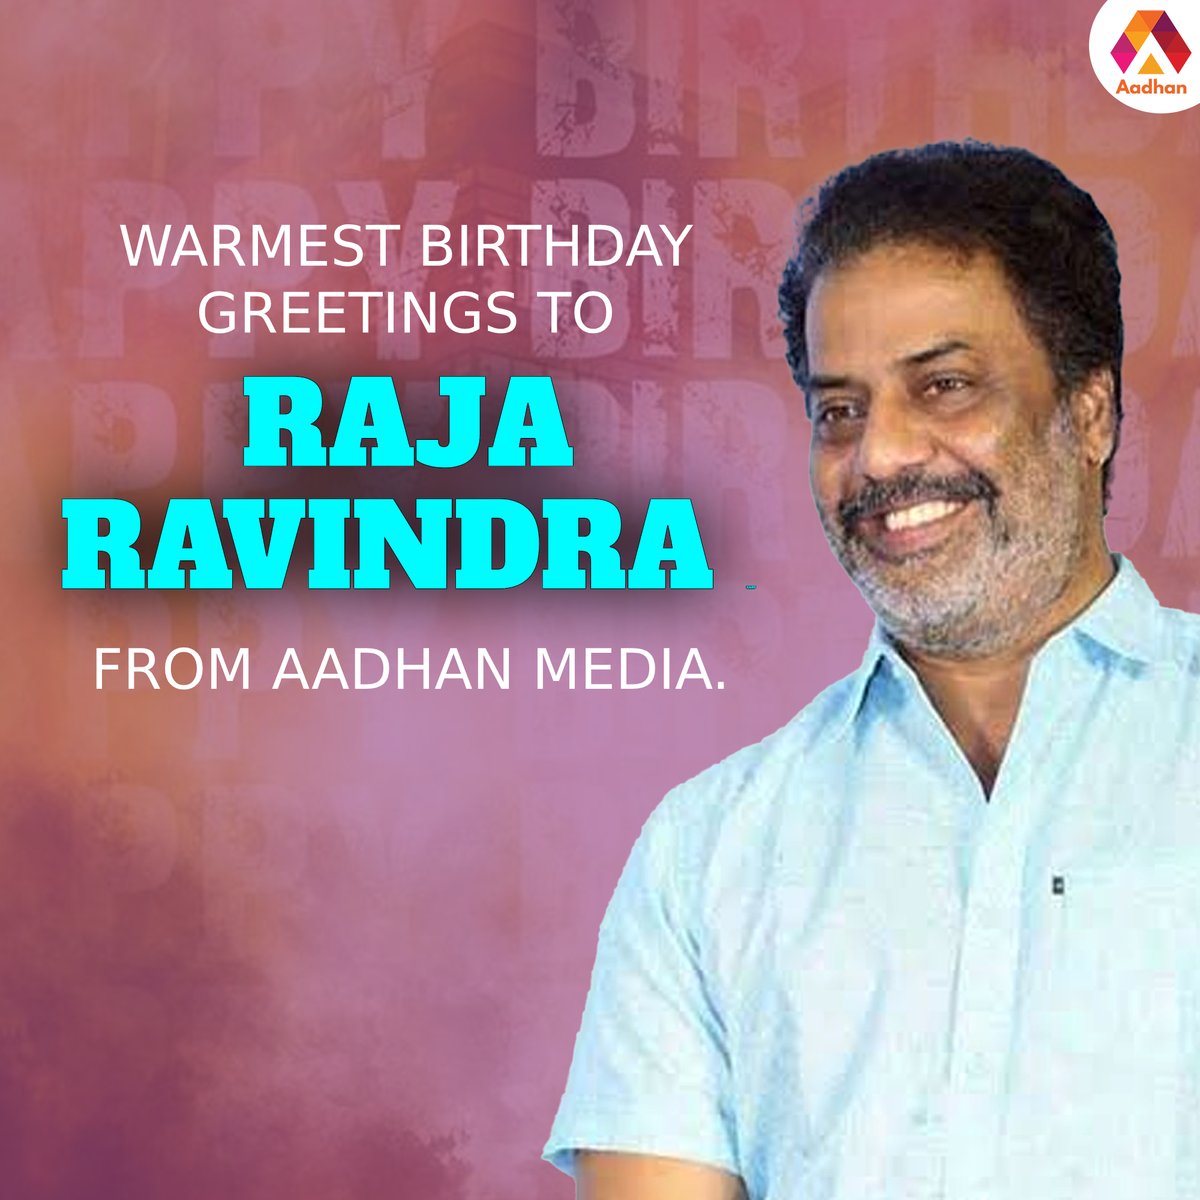 Warmest birthday greetings to @RajaRaveendara garu from Aadhan Media.